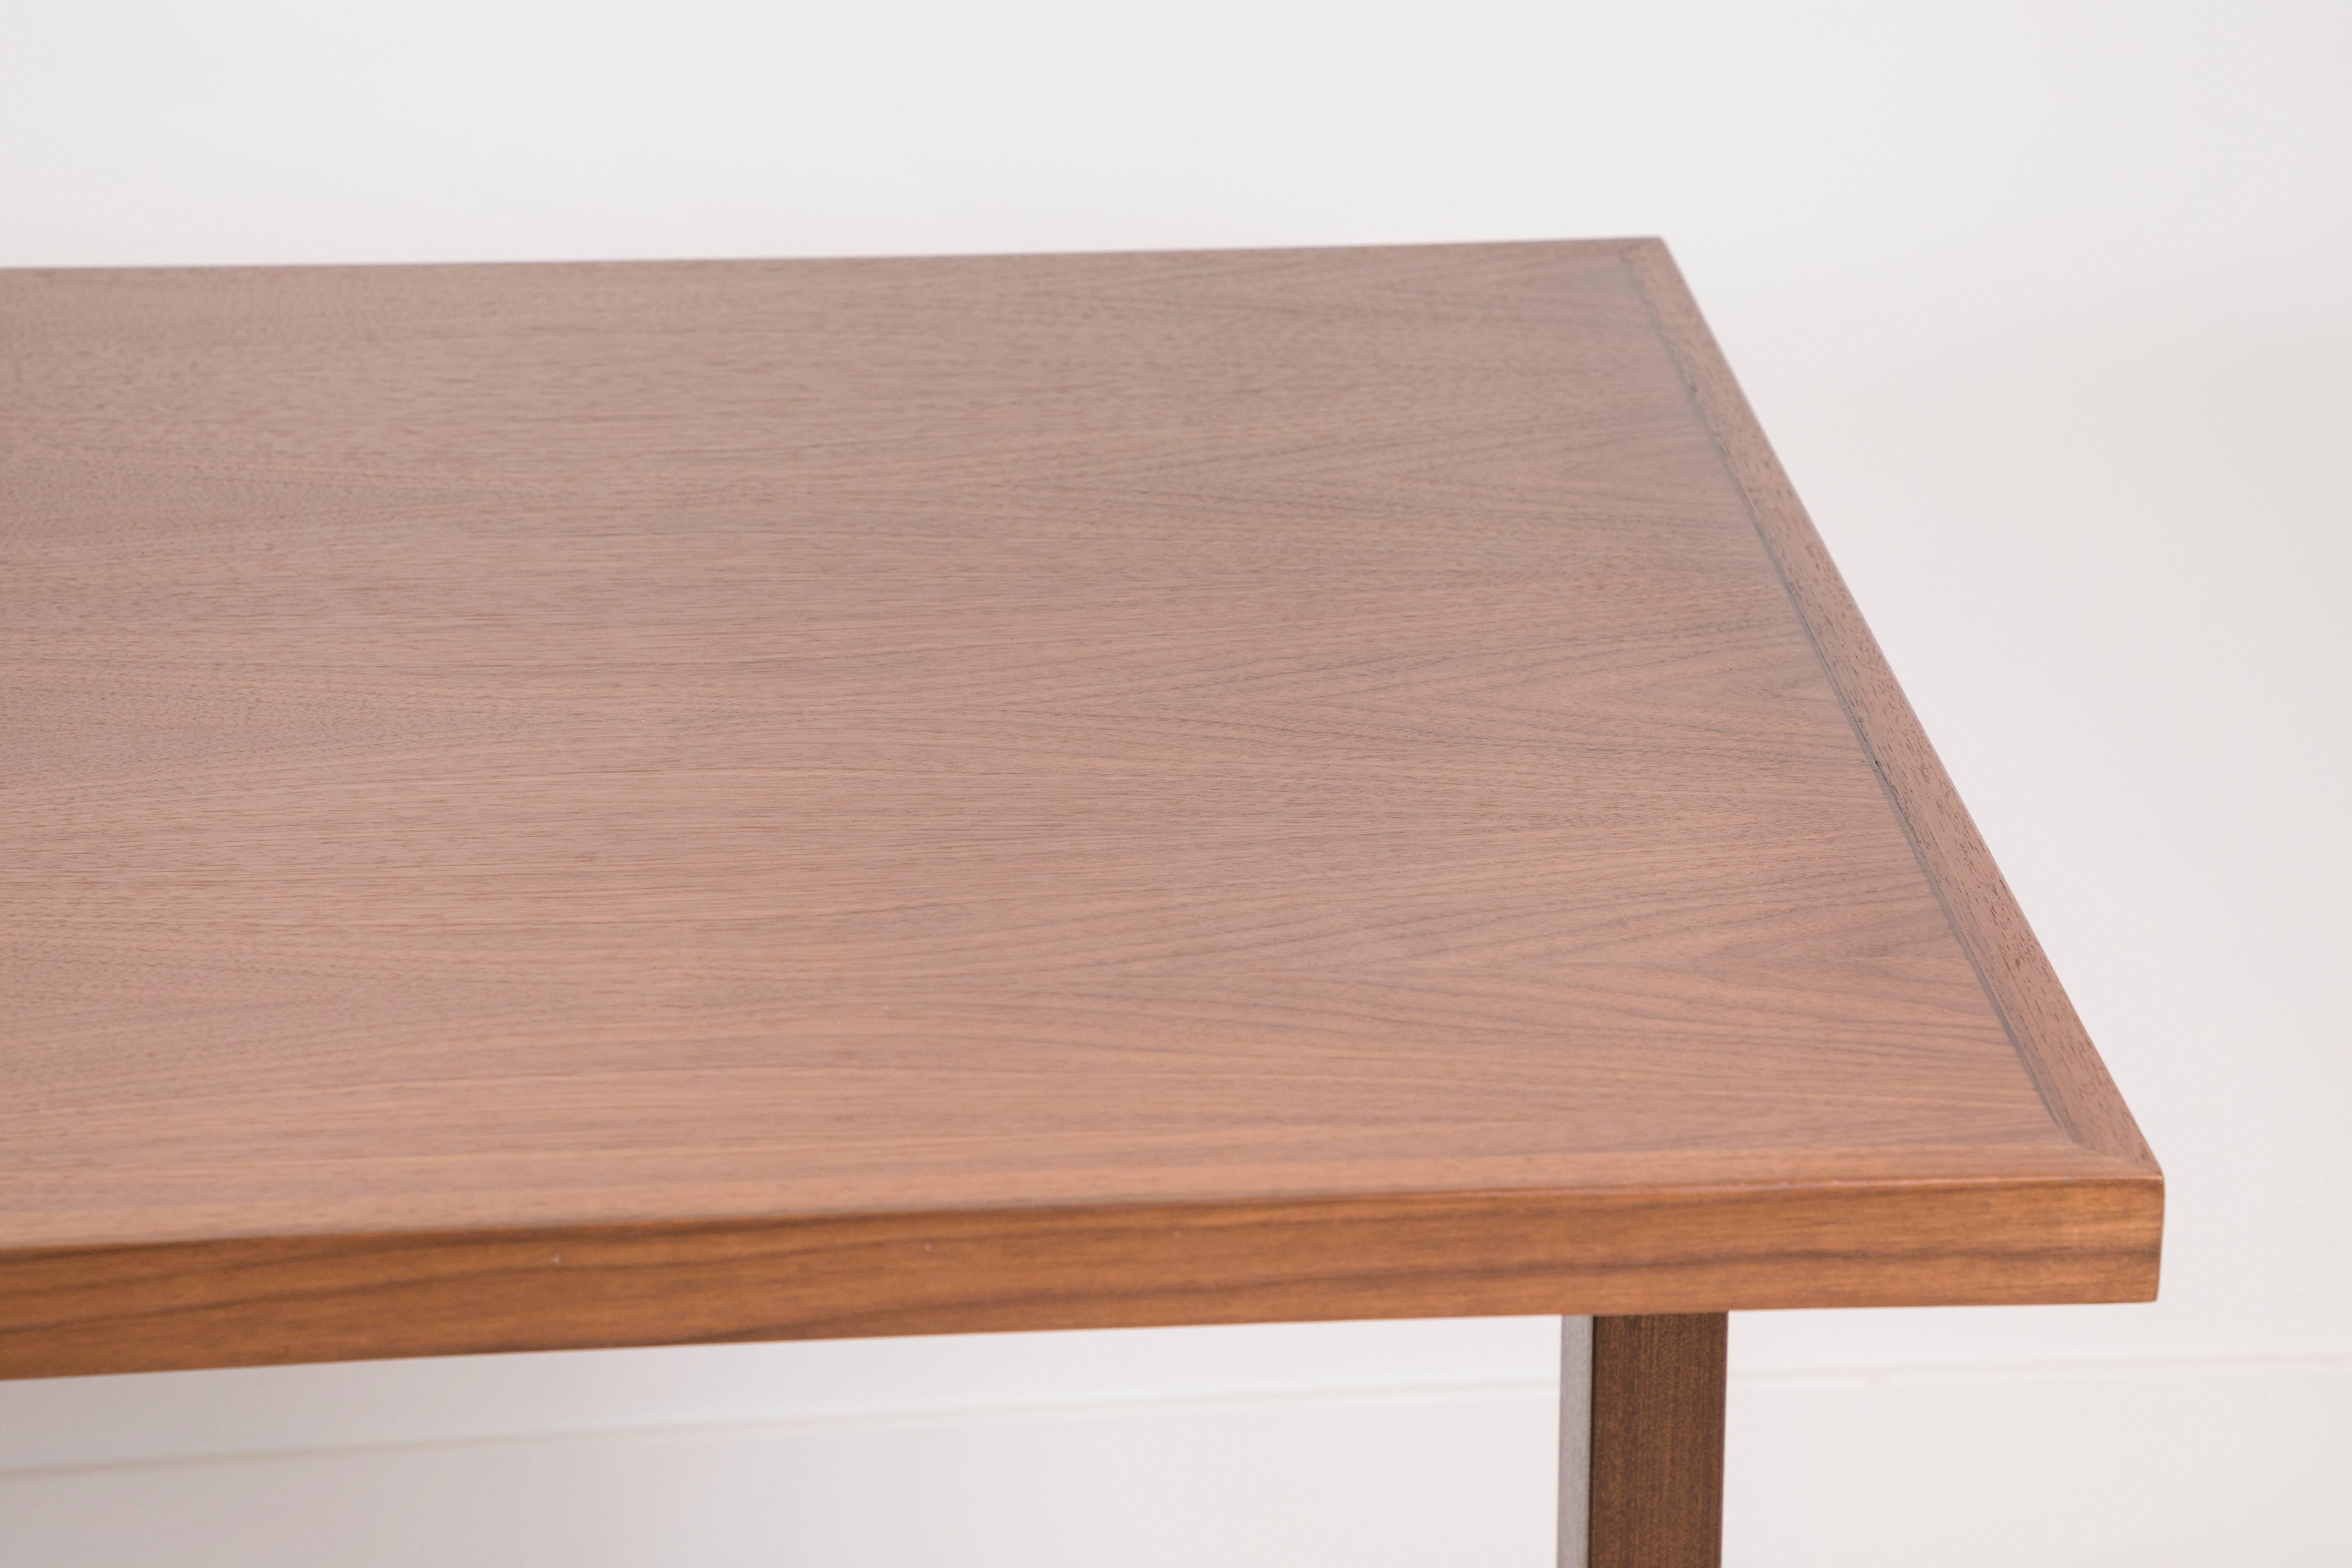 Walnut Ivanhoe Desk by Lawson-Fenning